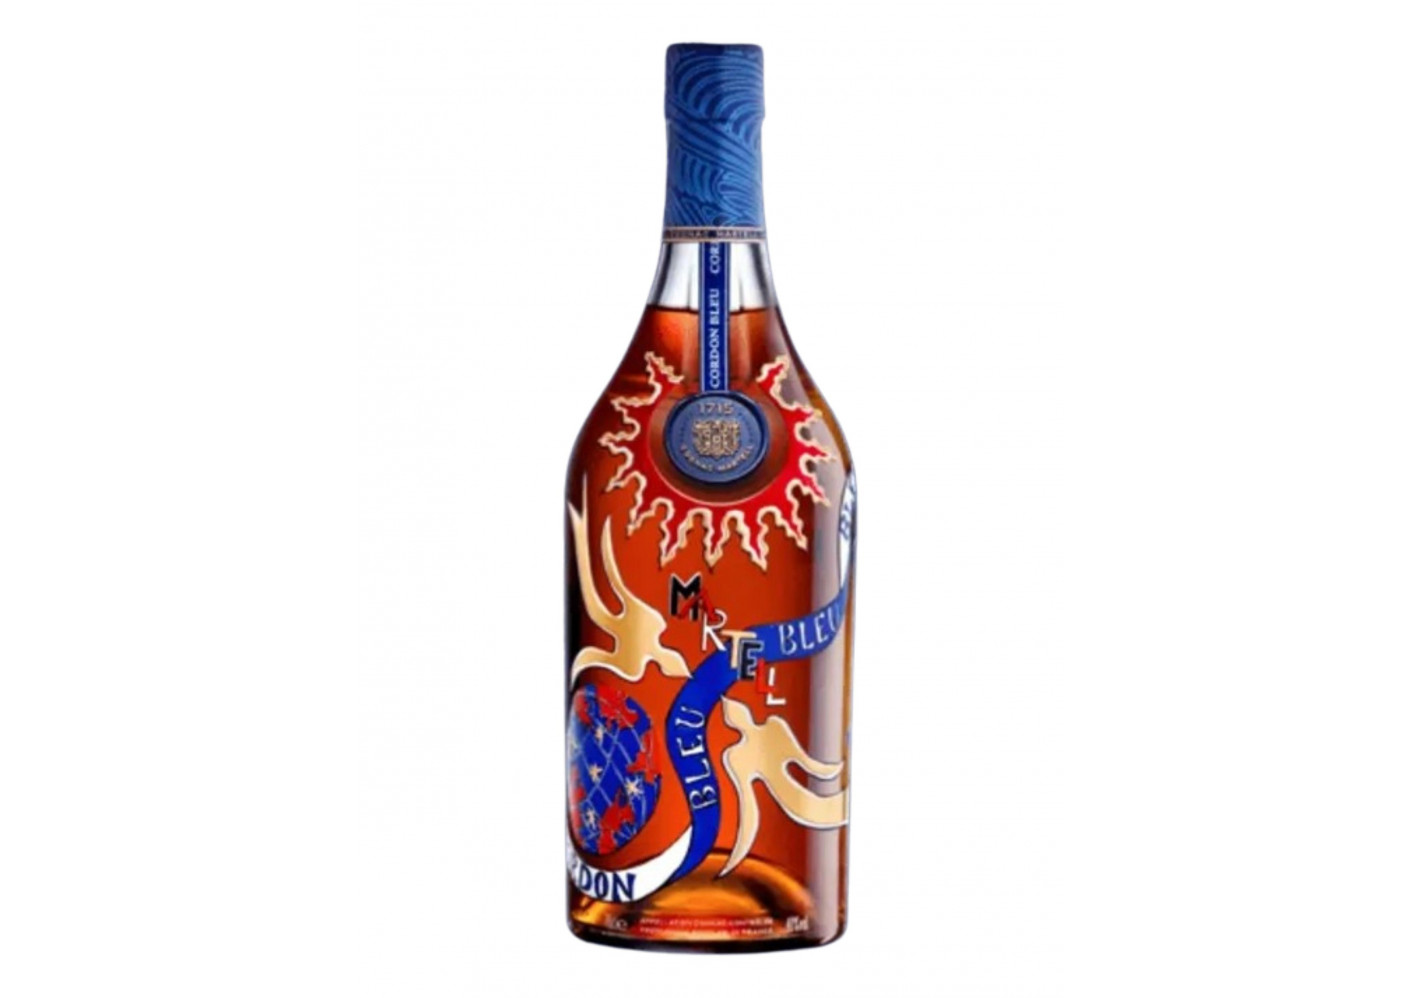 Martell Cordon Bleu Limited Edition by Vincent Darré Cognac - Cognac Expert